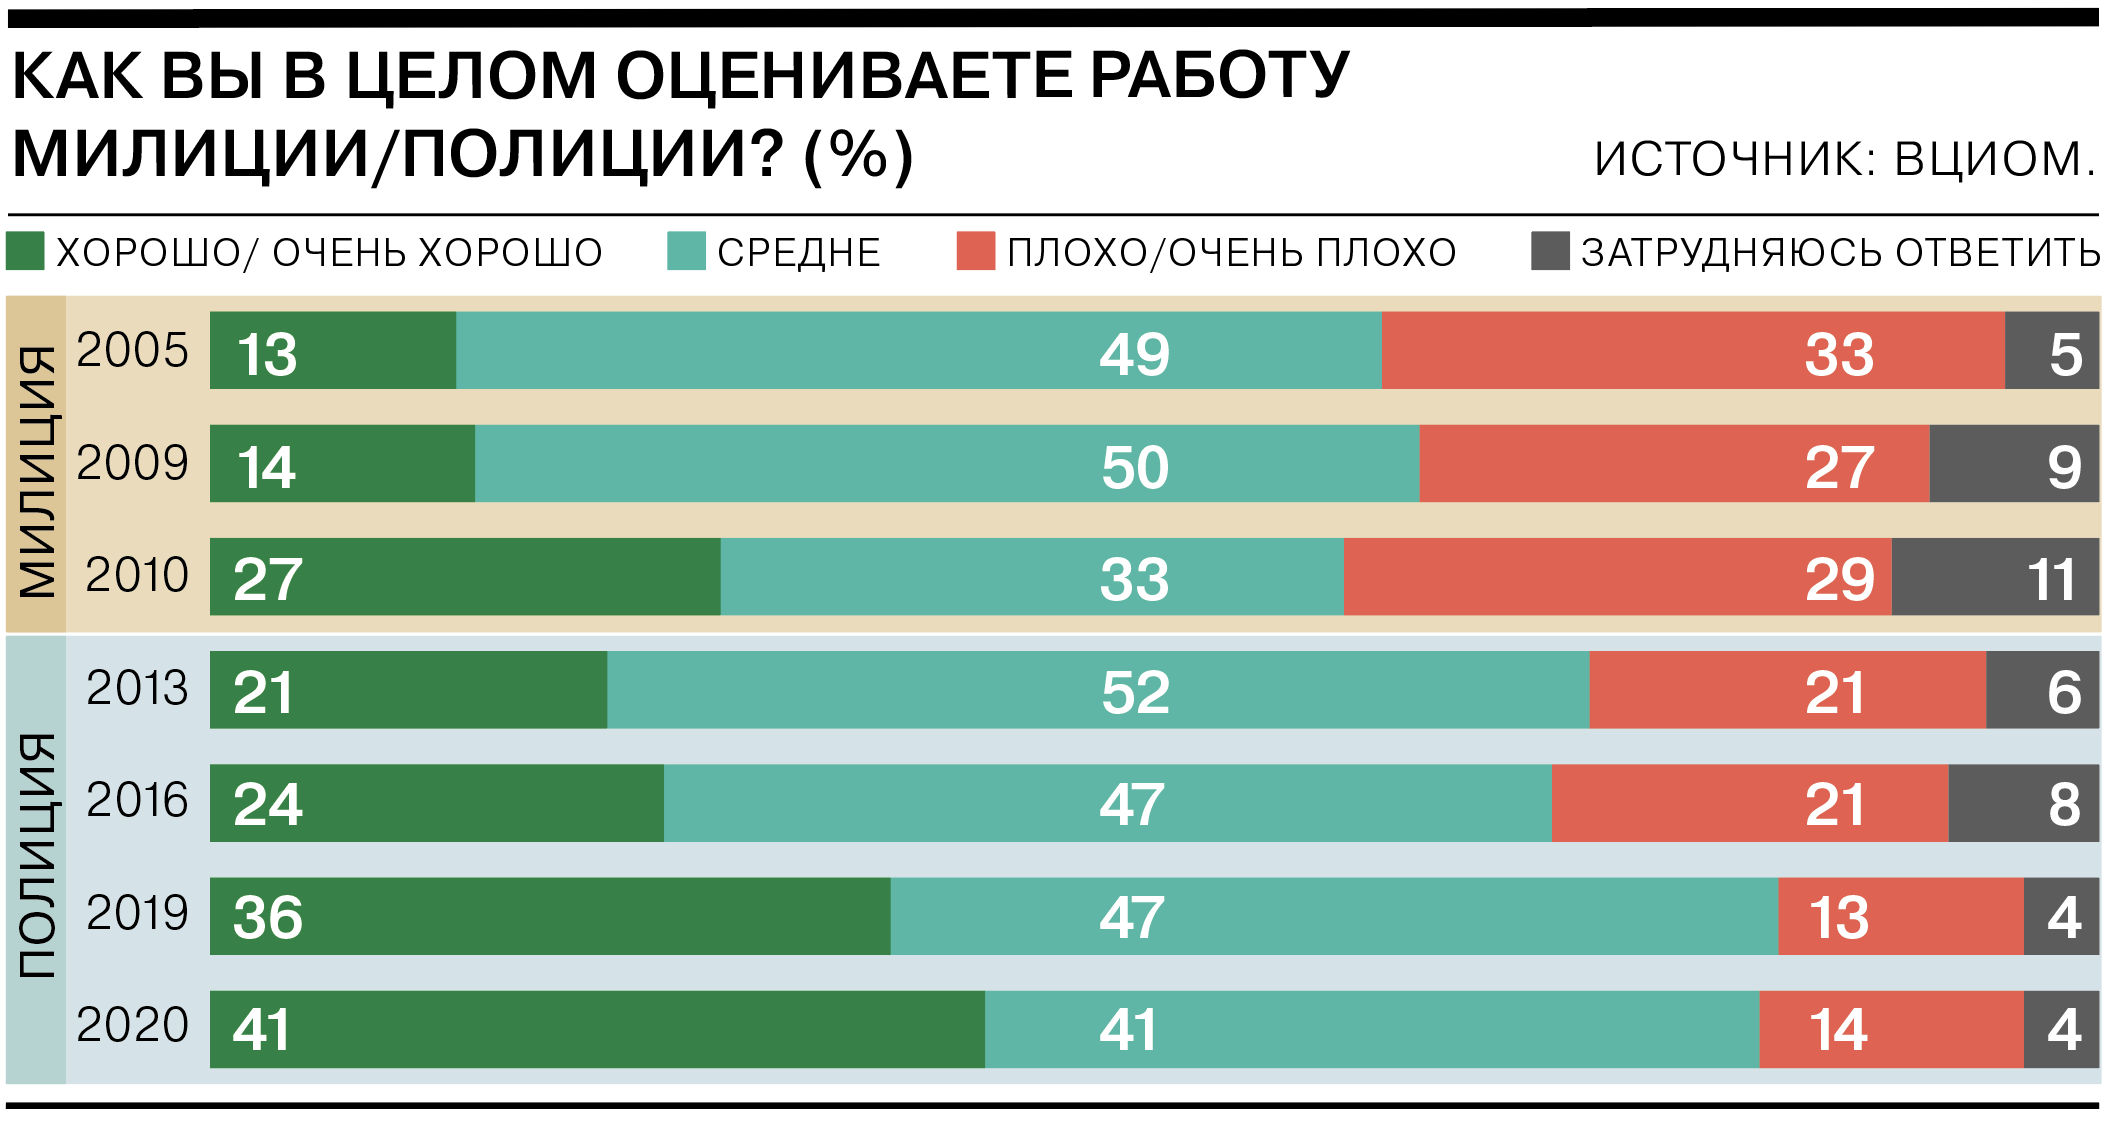 https://im.kommersant.ru/ISSUES.PHOTO/CORP/2021/02/05/3%D0%BE%D1%86%D0%B5%D0%BD%D0%BA%D0%B8.png